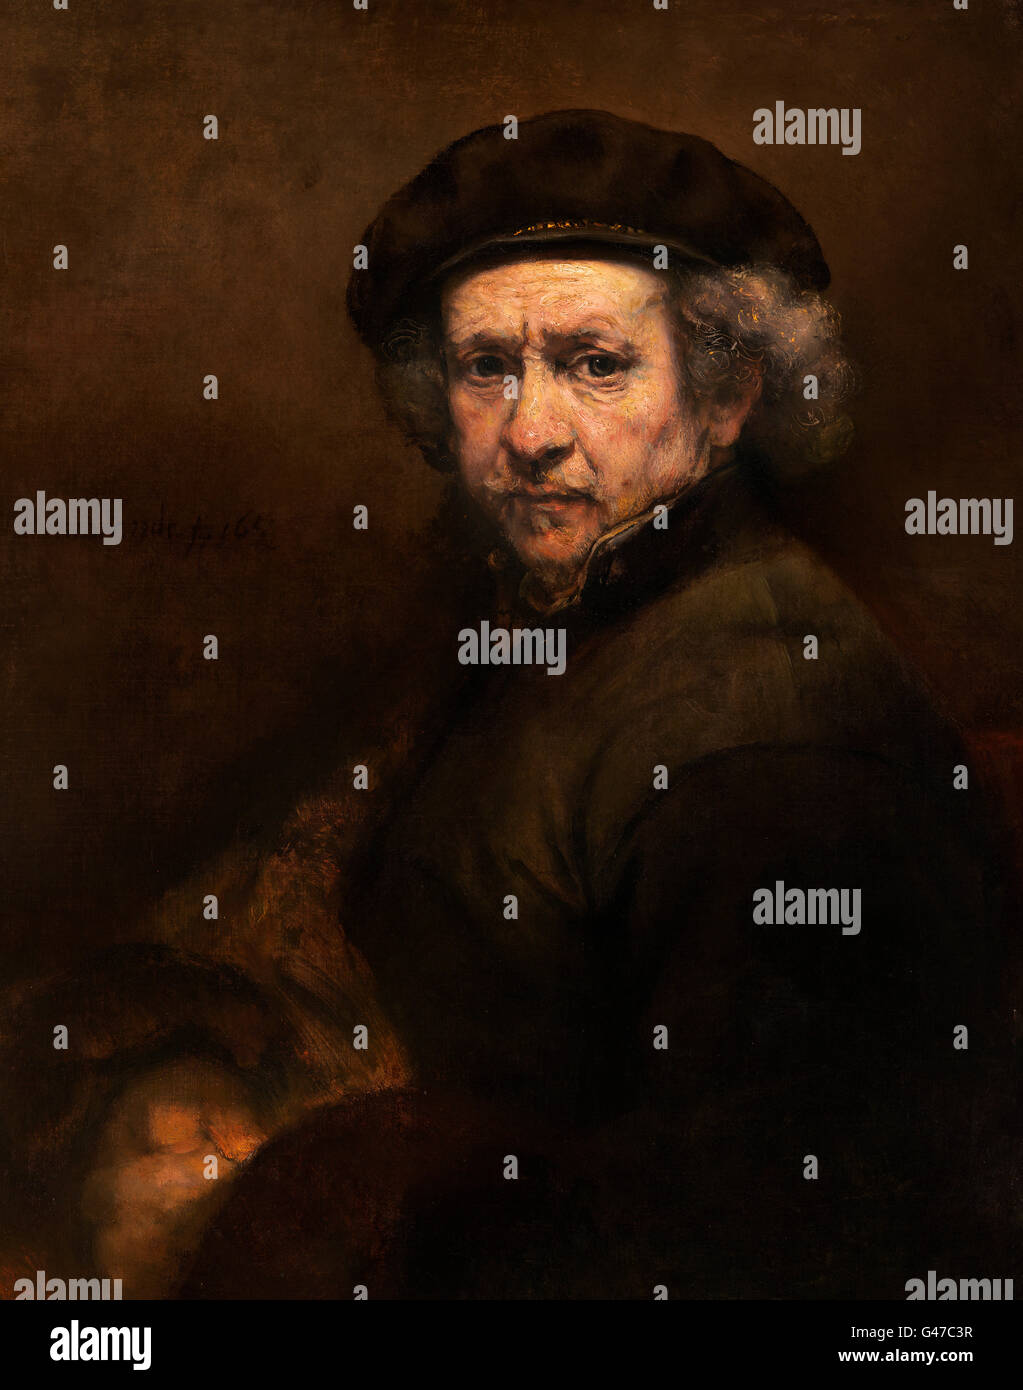 Rembrandt. Self Portrait à l'âge de 53 ans d'après Rembrandt van Rijn (1606-1669), huile sur toile, c.1659 Banque D'Images